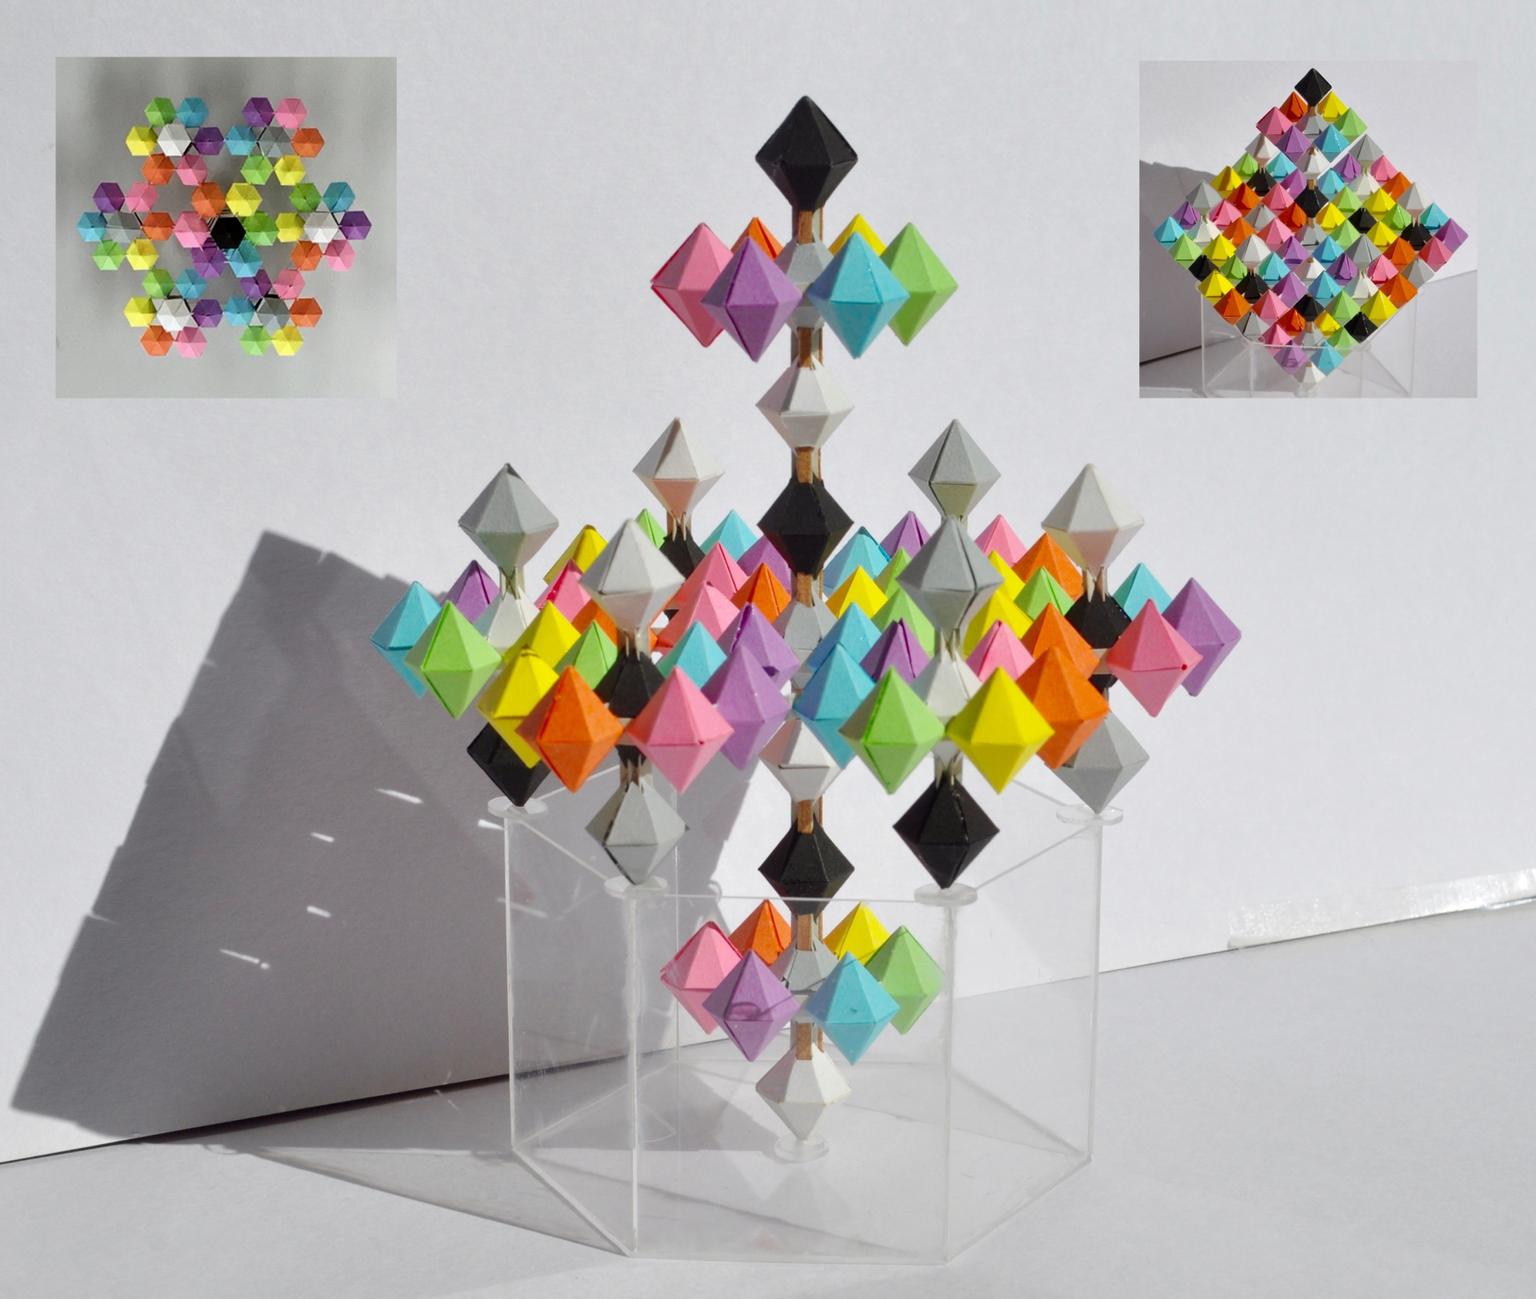 Image for entry 'Fractal Sudoku Sculpture'